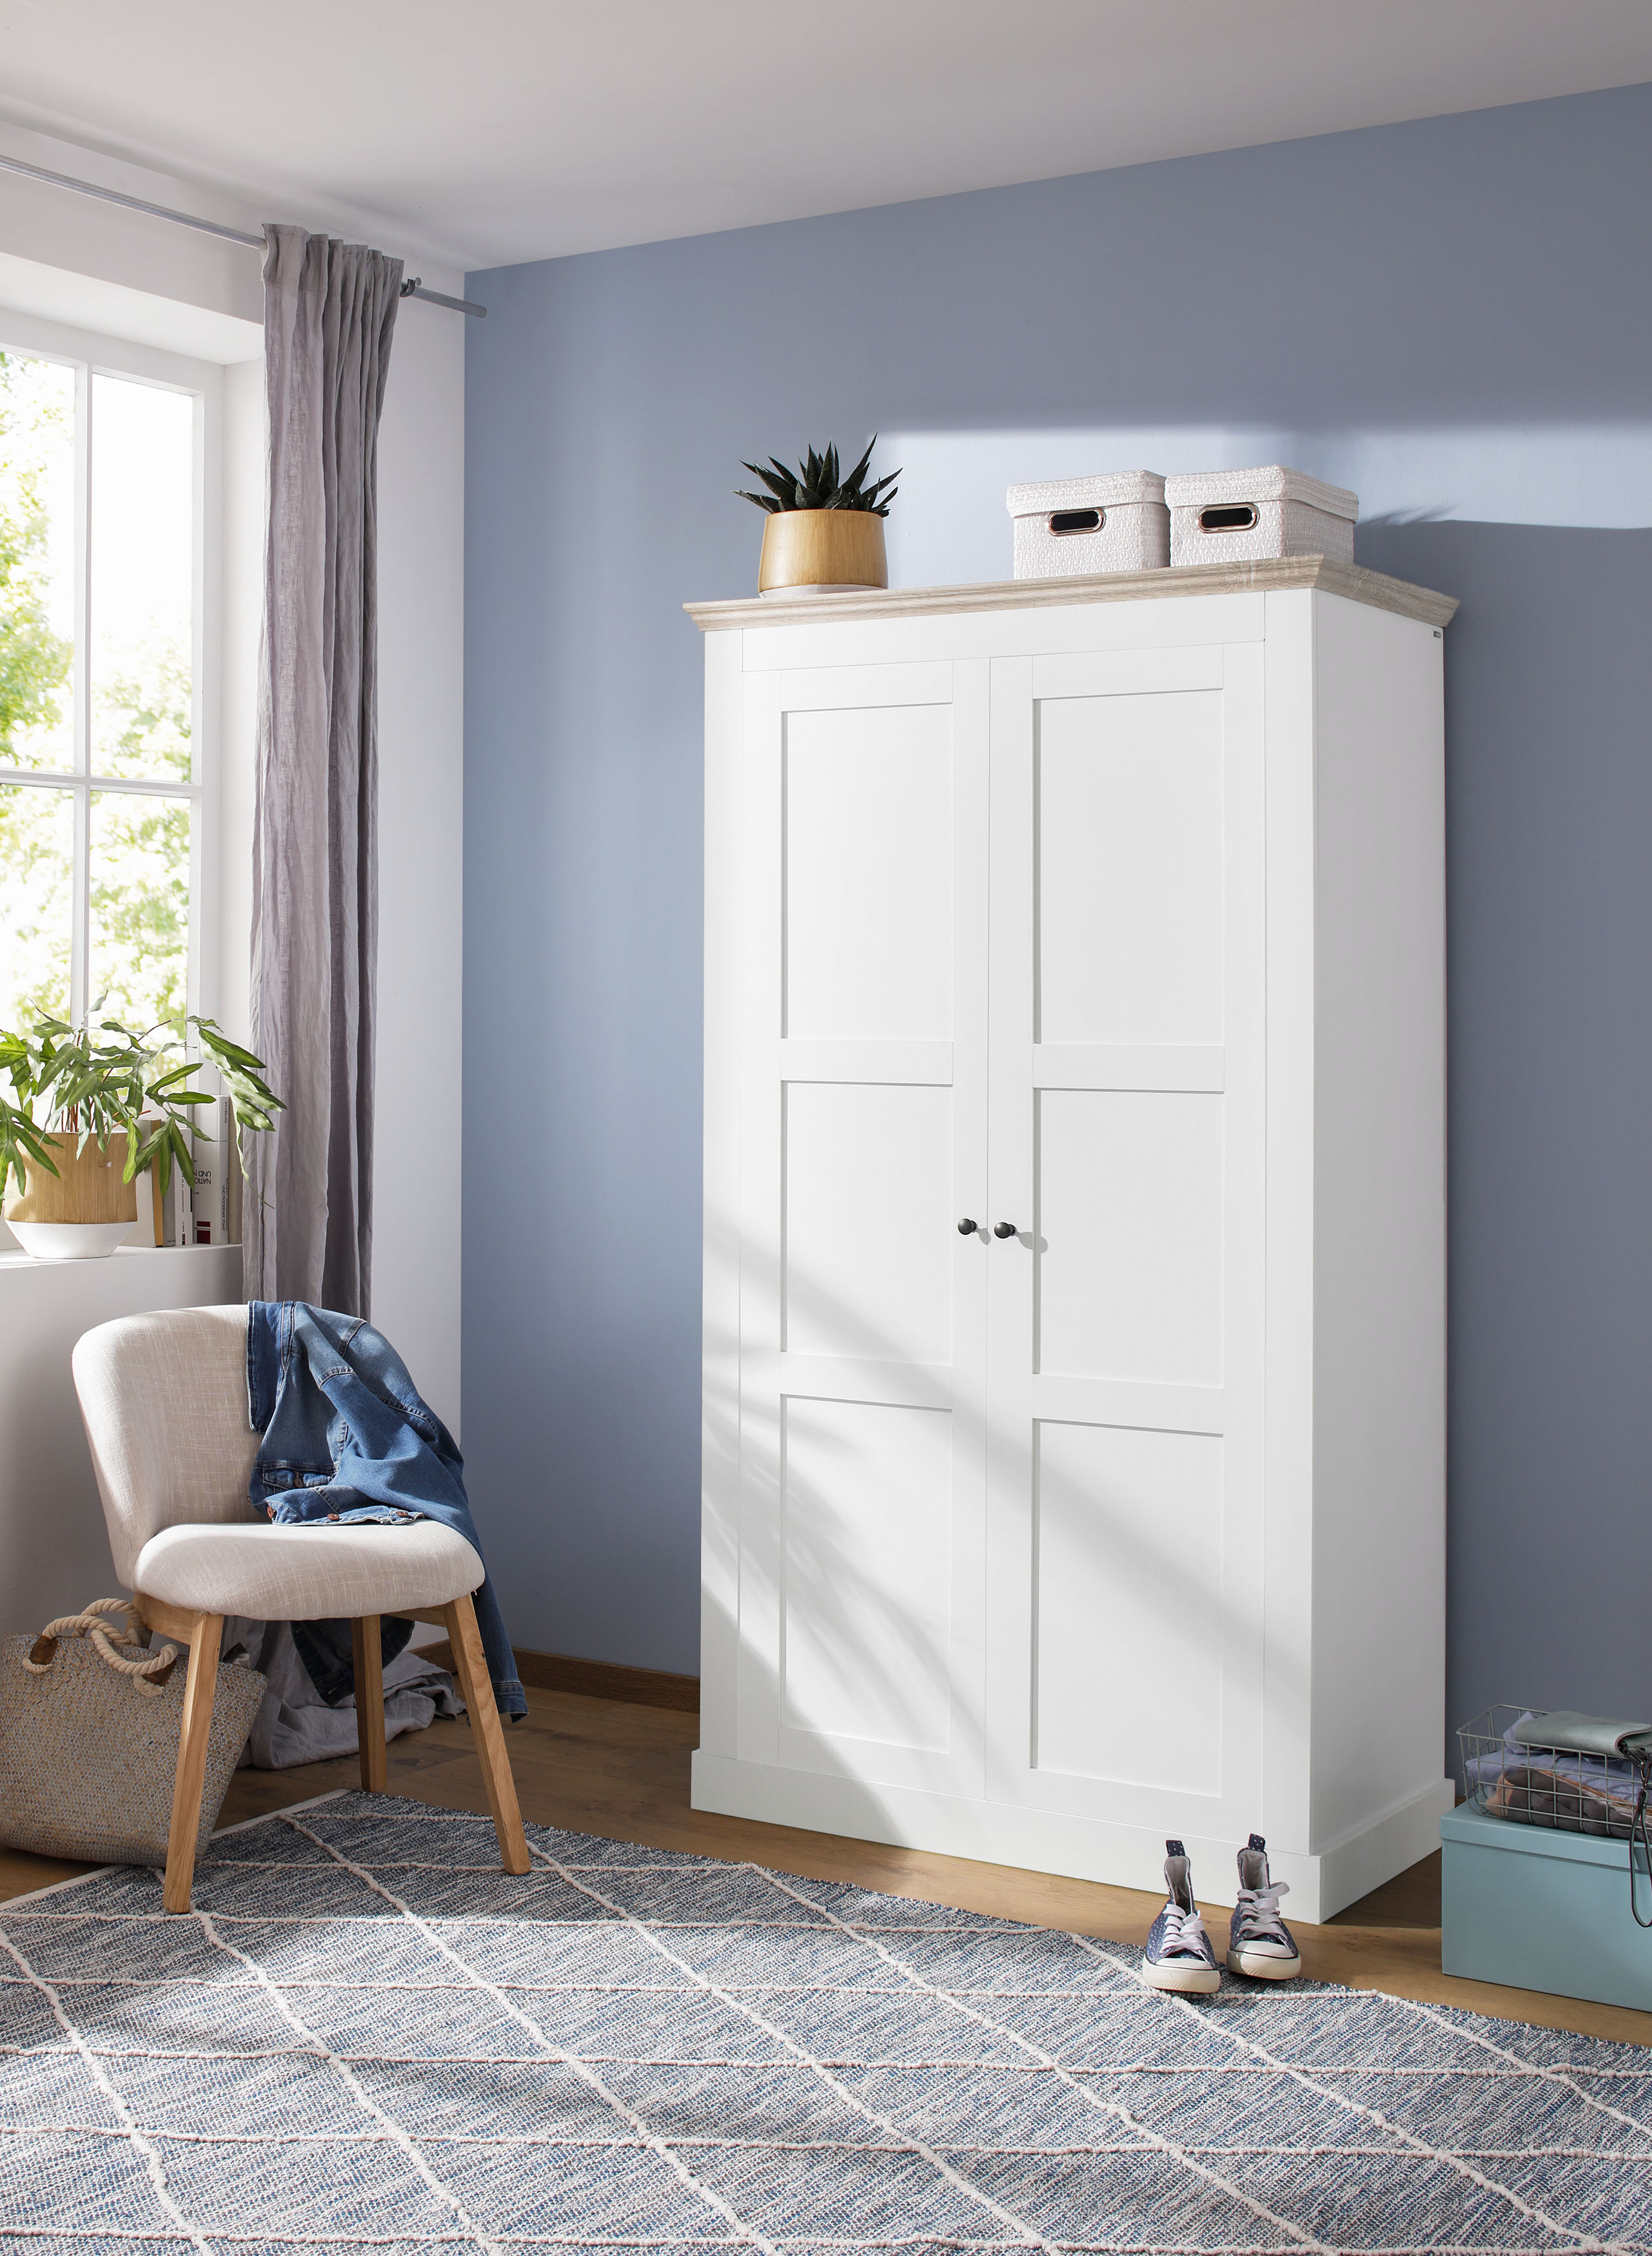 Home affaire Kleiderschrank Clonmel, mit Einlegeboden und Kleiderstange hinter die Türen, in verschiedenen Farbvarianten erhältlich, Höhe 180 cm